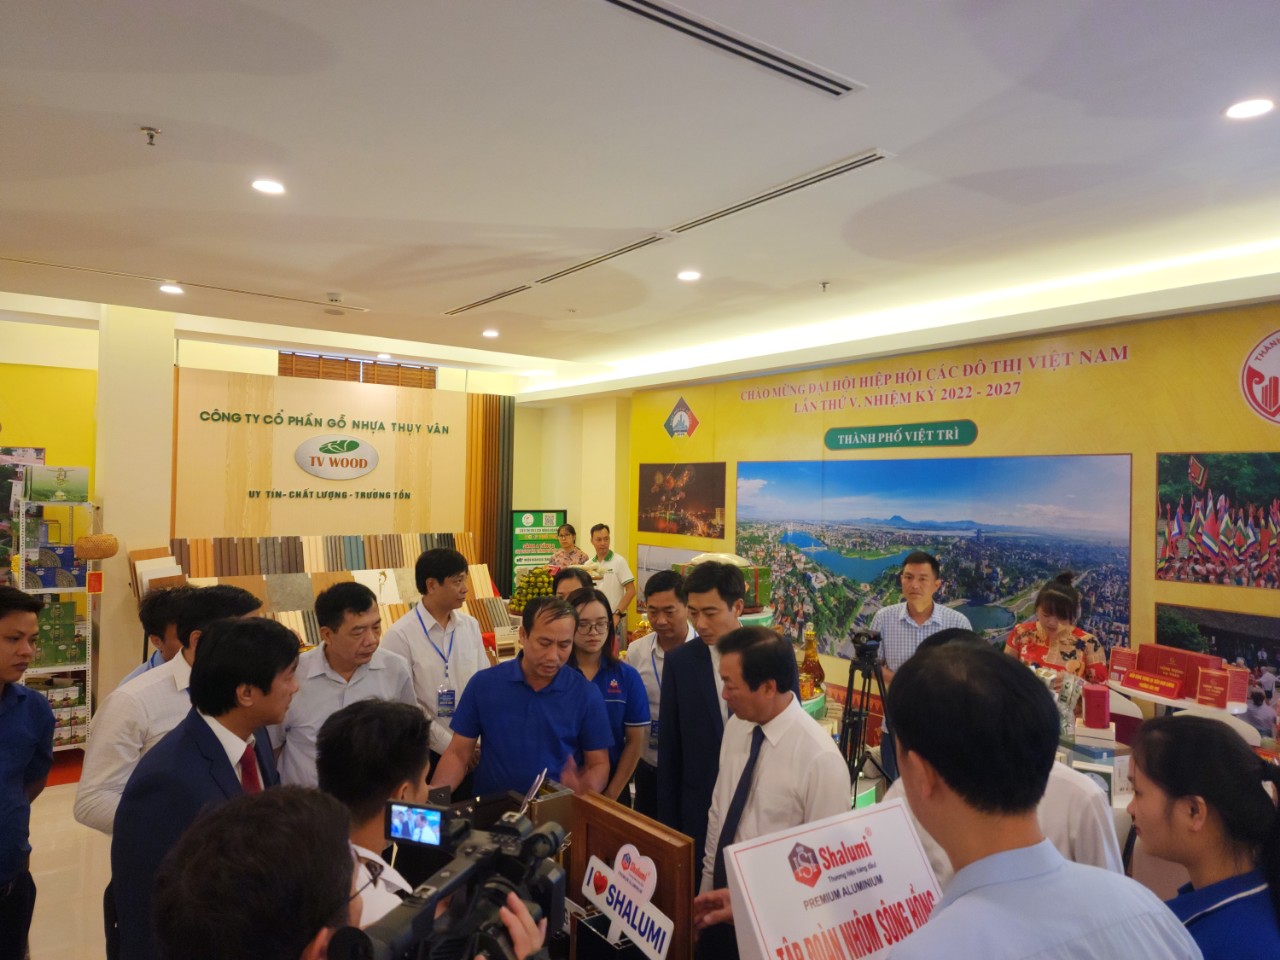 Công ty cổ phần Tập đoàn Nhôm Sông Hồng Shalumi tham dự Đại hội Hiệp hội các đô thị Việt Nam lần thứ V, nhiệm kỳ 2022 – 2027